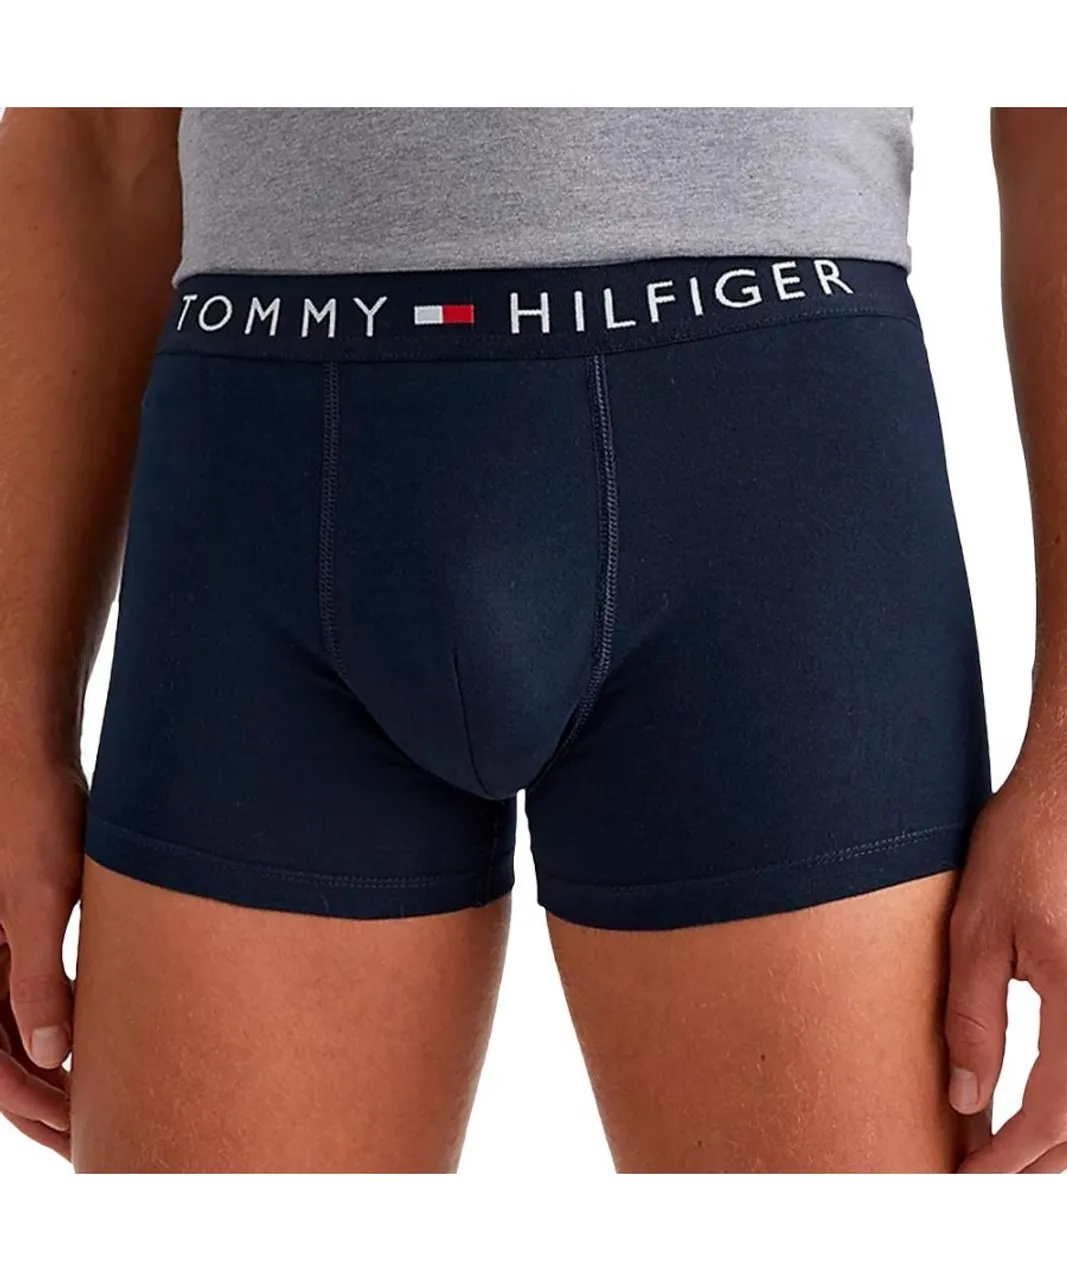 Tommy Hilfiger Mens Trunk & T-Shirt Pack - Multicolour Cotton